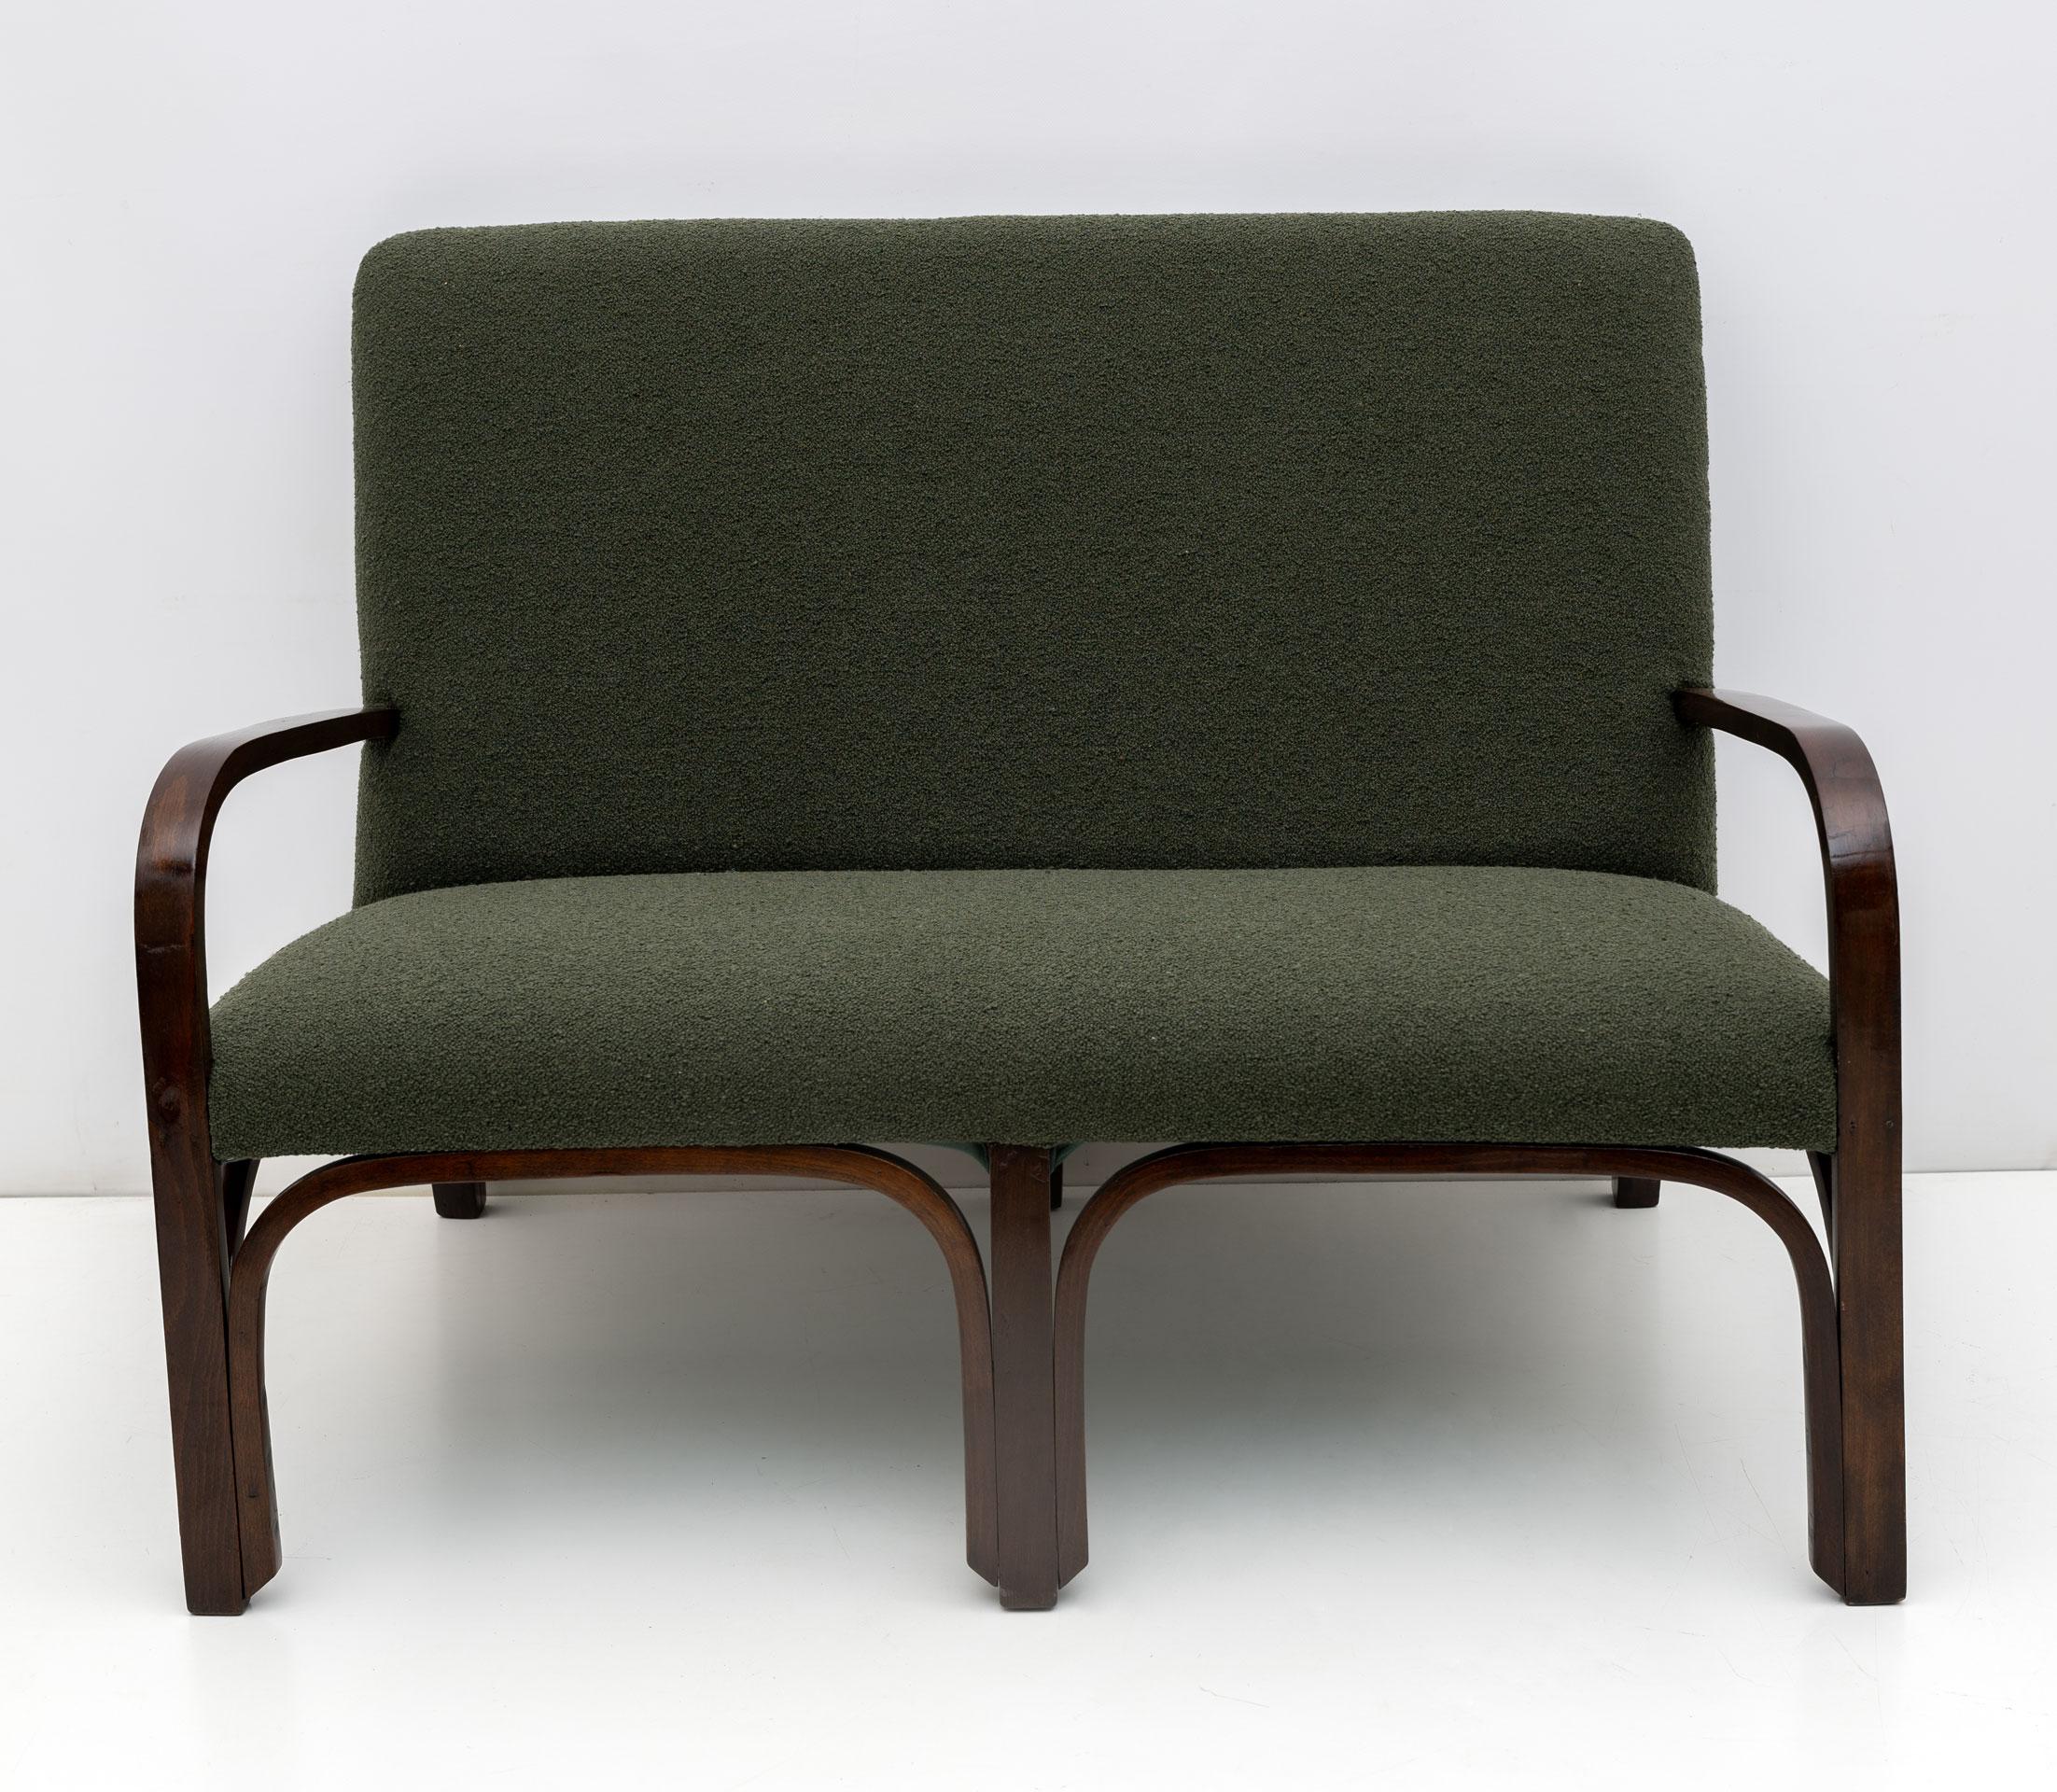 Sofa und zwei Sessel, hergestellt in Italien in den 1930er Jahren im Art-déco-Stil. Das Set wurde vollständig restauriert und mit grünem Bouclé bezogen. Bereit, Ihr Haus einzurichten.
Die Sessel messen cm:
W55 x D74 x H82